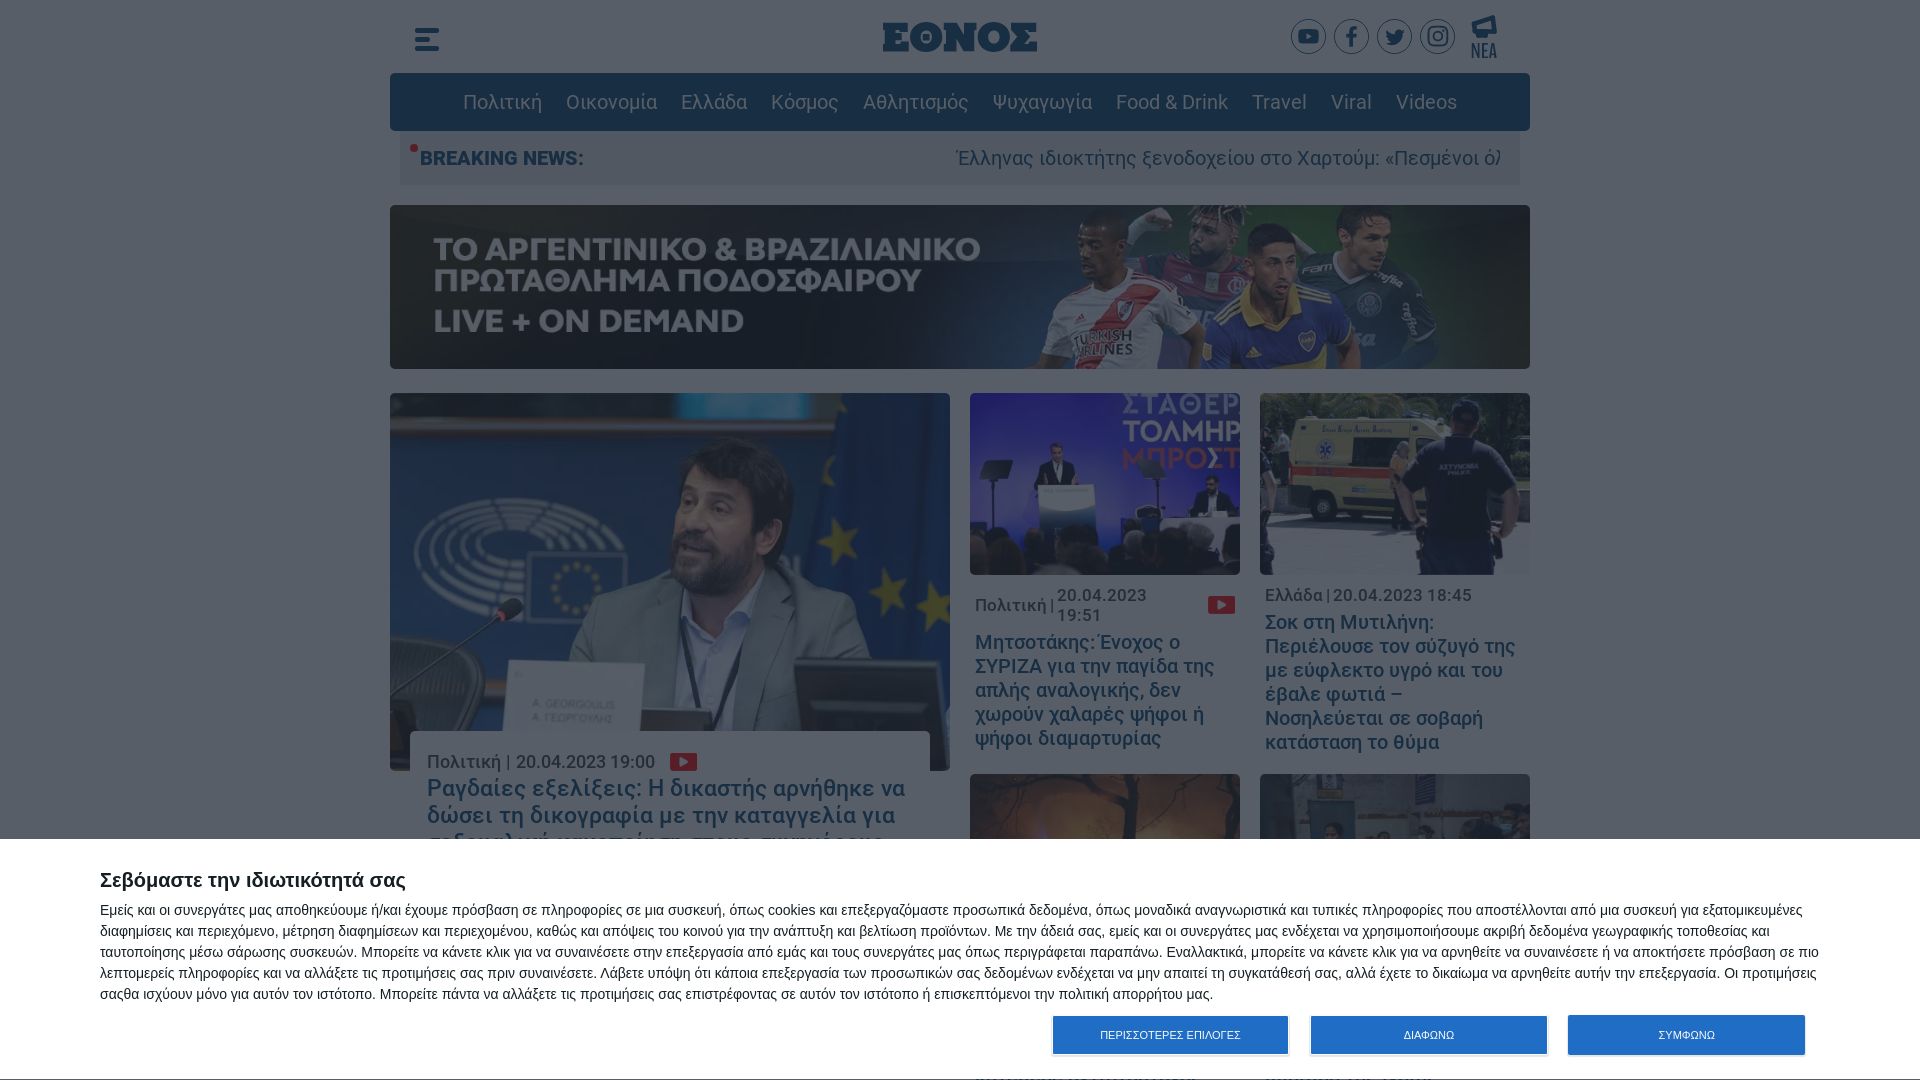 Website status ethnos.gr is   ONLINE